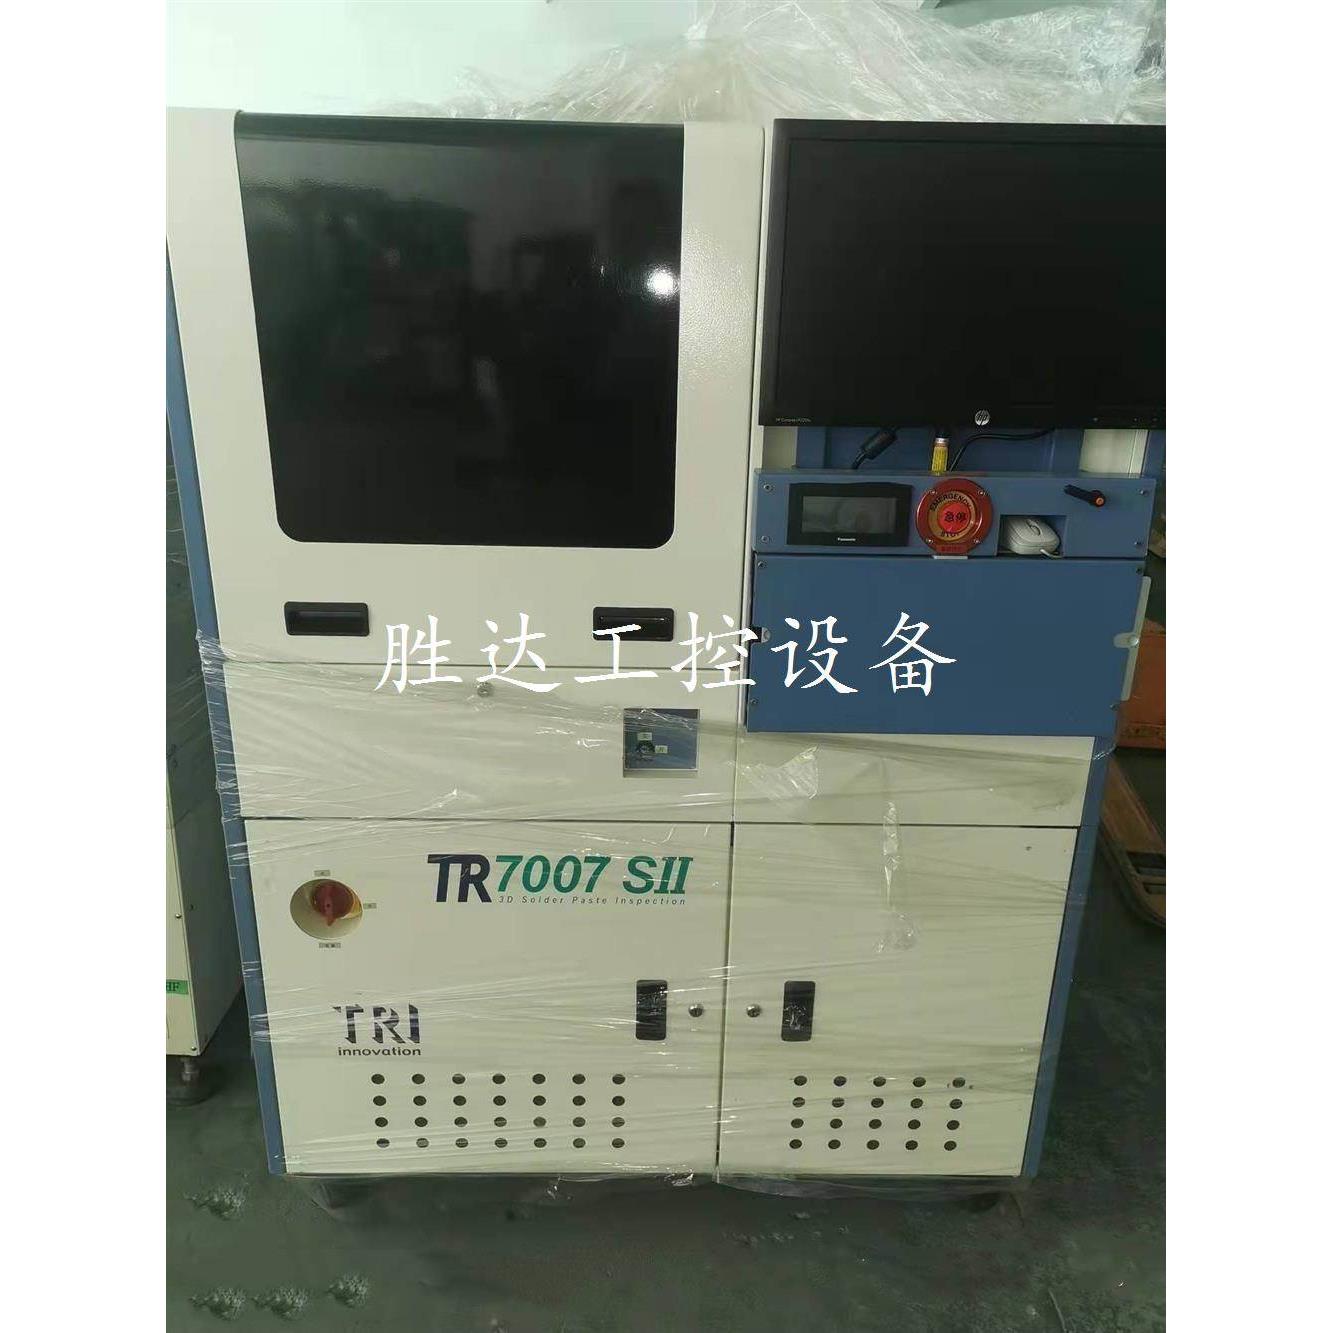 德律TRI TR7007 SII 3D锡膏检测机/自动光学检测机 议价议价